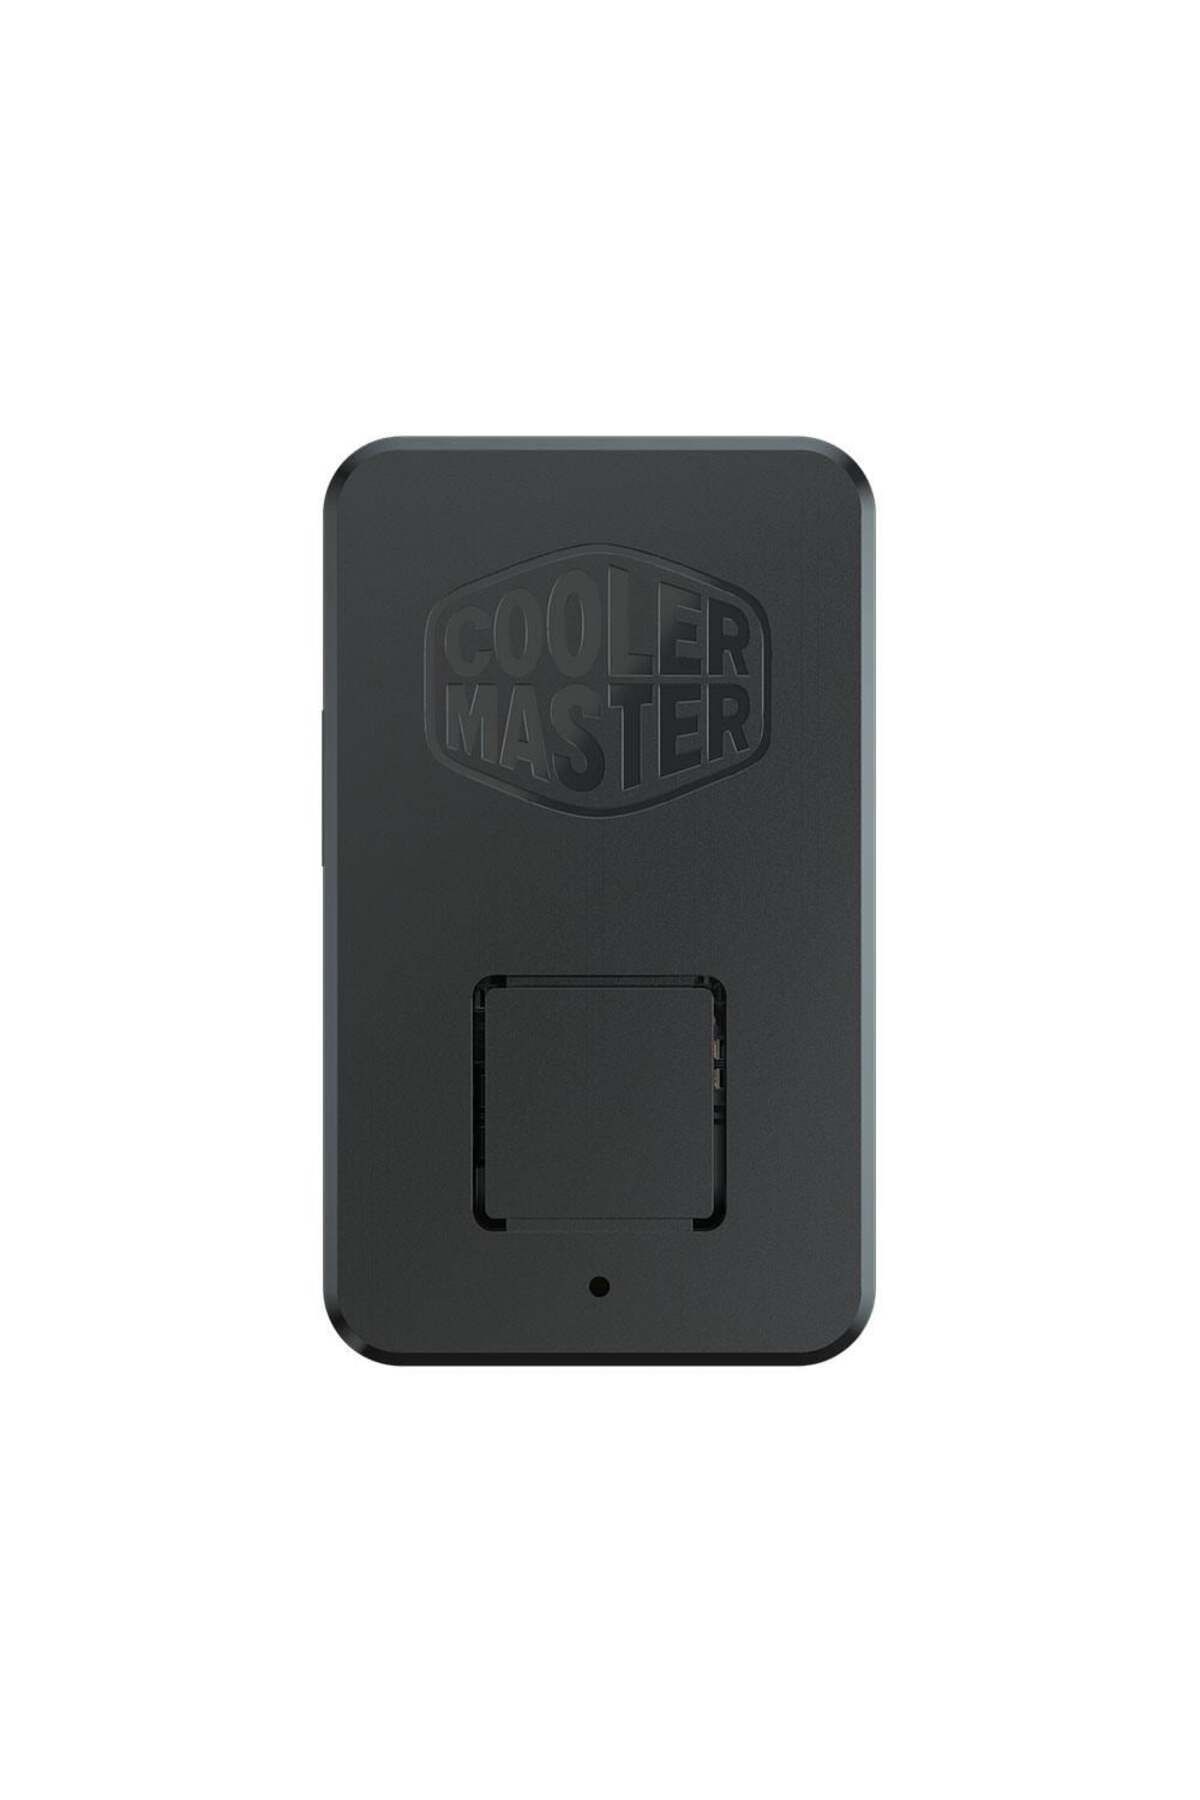 Cooler Master CM Universal Mini ARGB LED Kontrol Ünitesi